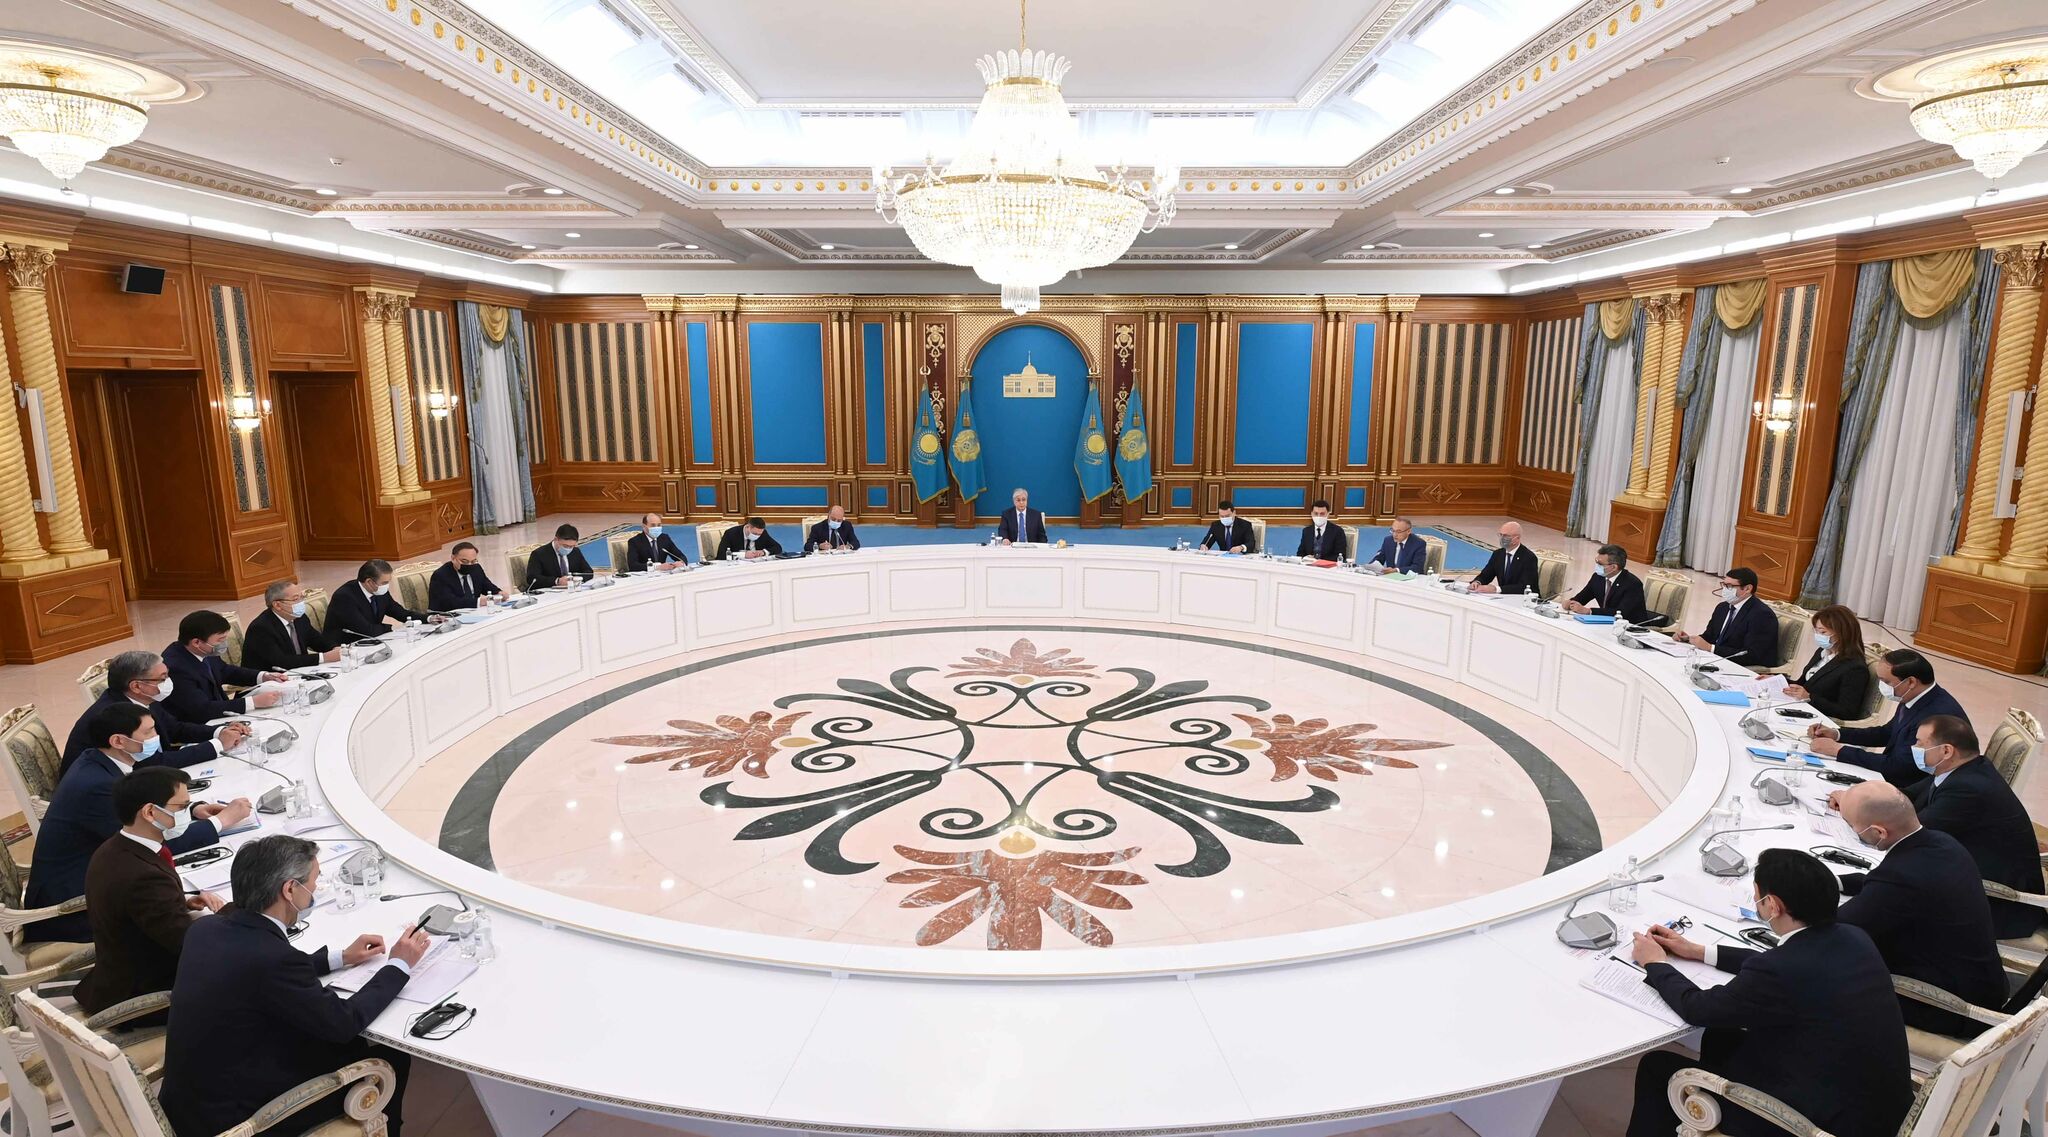 Глава государства Касым-Жомарт Токаев провел заседание Высшего совета по реформам